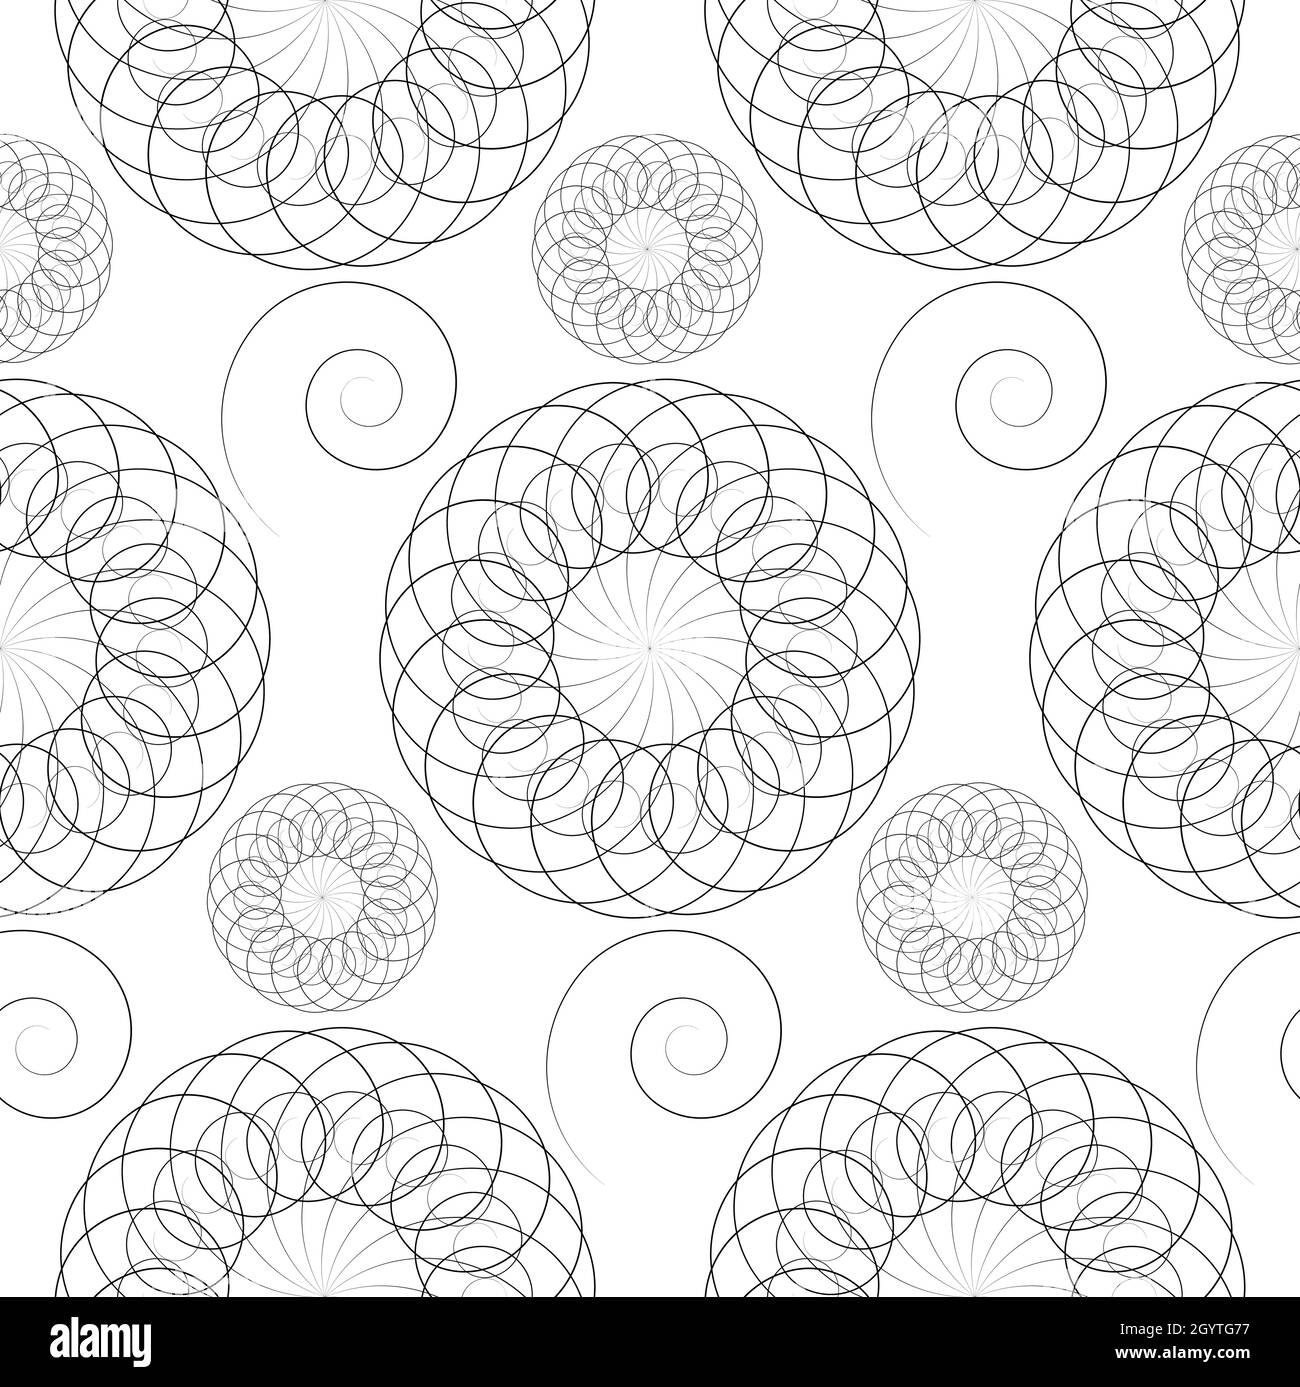 Nahtloses Muster mit Spiralen und Mandala Blumen Ornament. Vintage Design Element in monochromatischem Stil. Zierspitze. Verzierter Blumendekor Stock Vektor